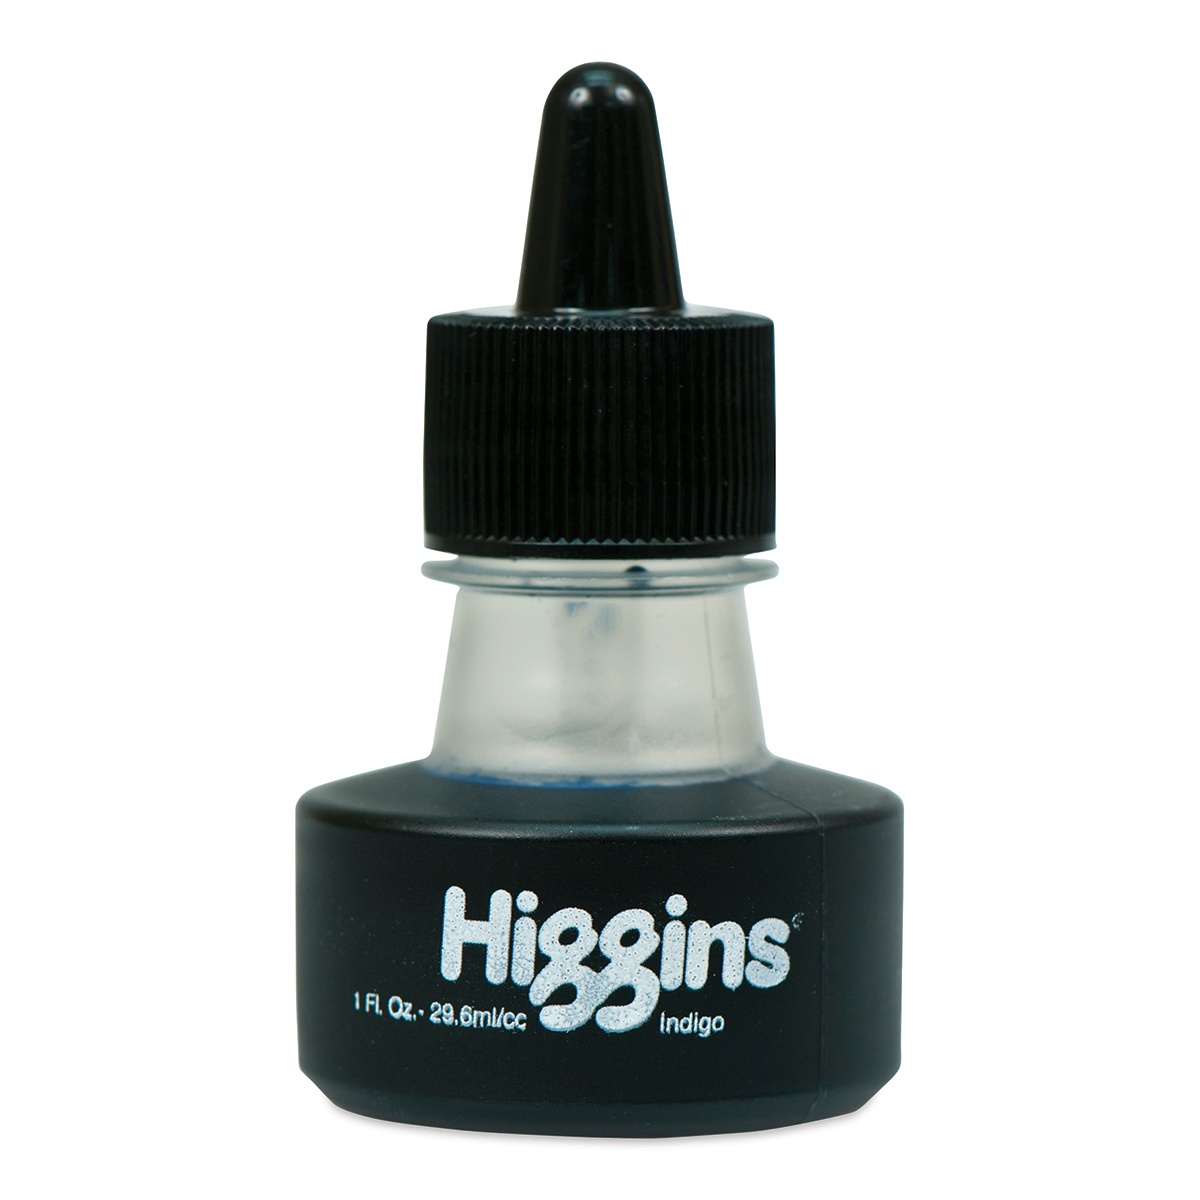 Higgins Waterproof Black India Ink